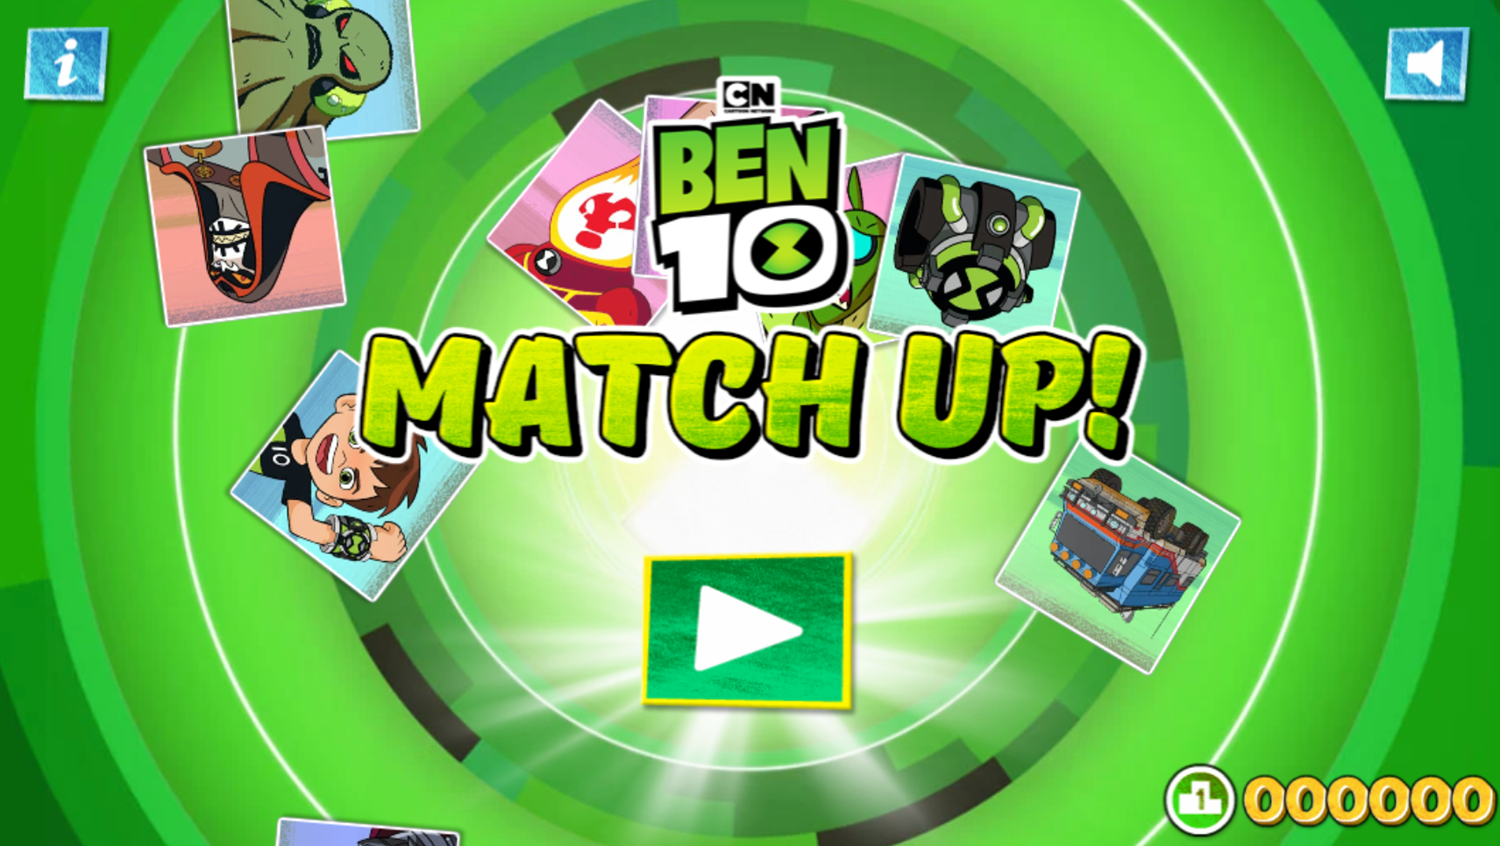 Ben 10 Match Up Game Welcome Screen Screenshot.